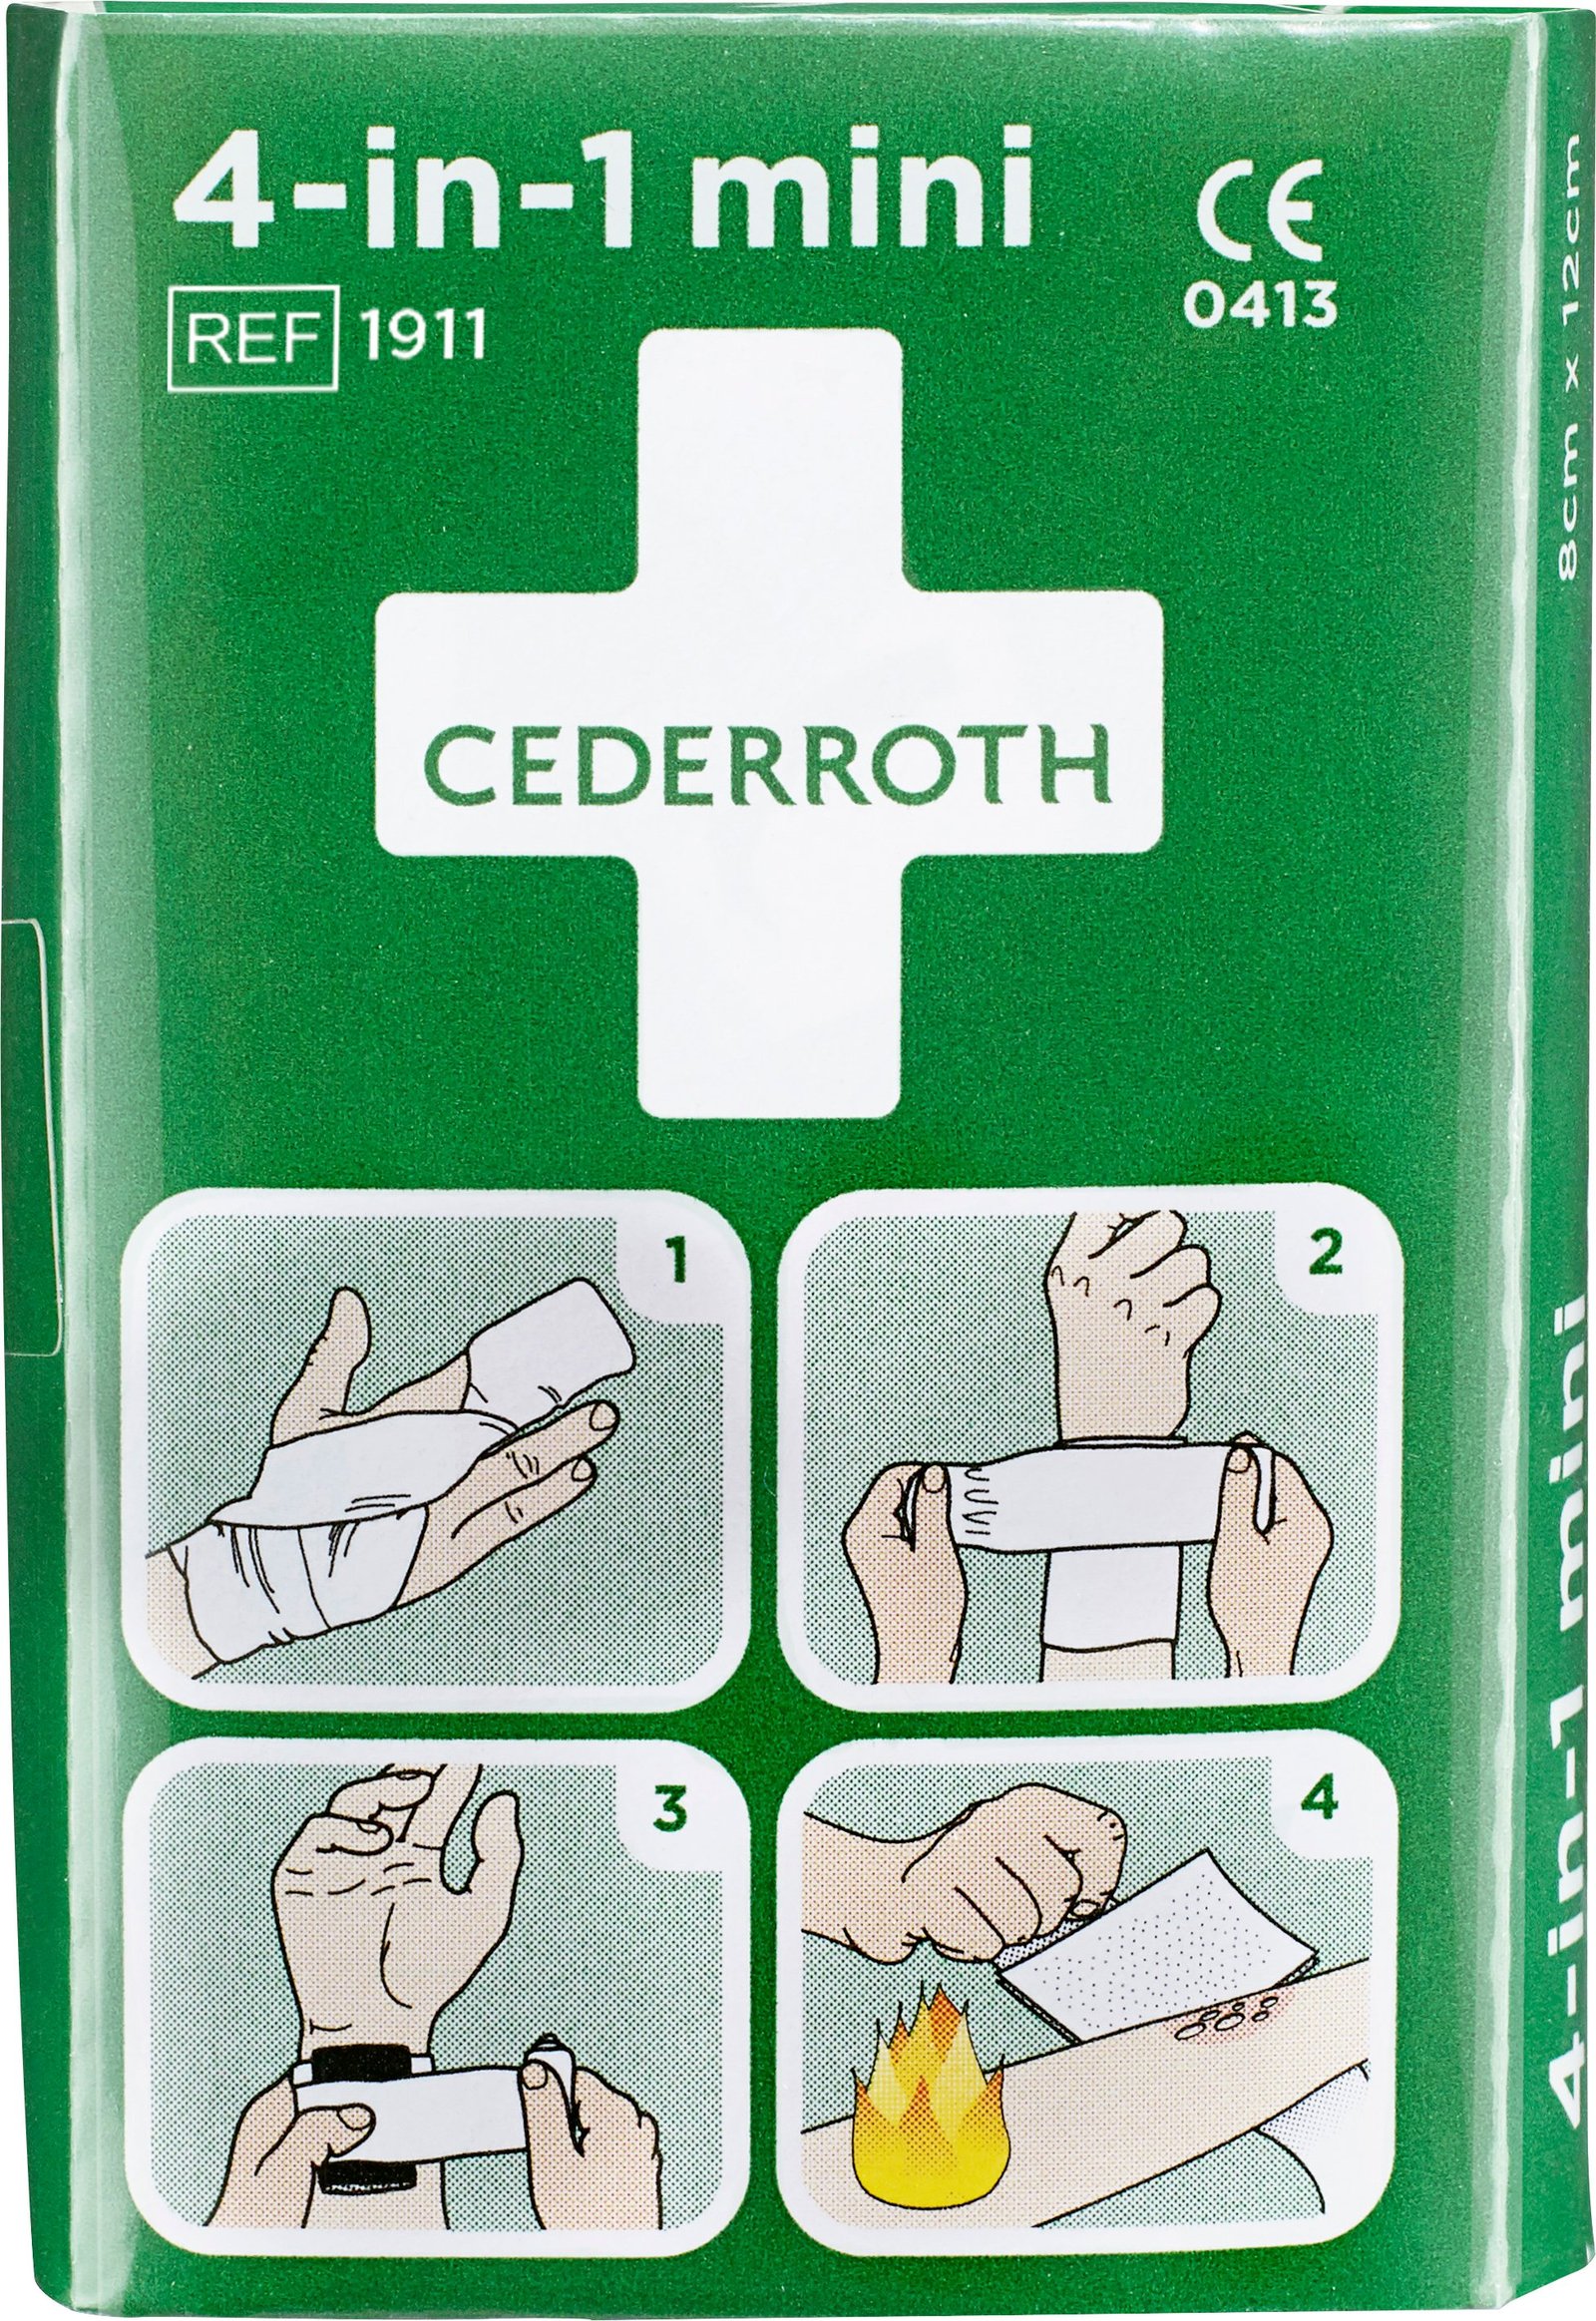 Cederroth Första hjälpen 4-i-1 Mini